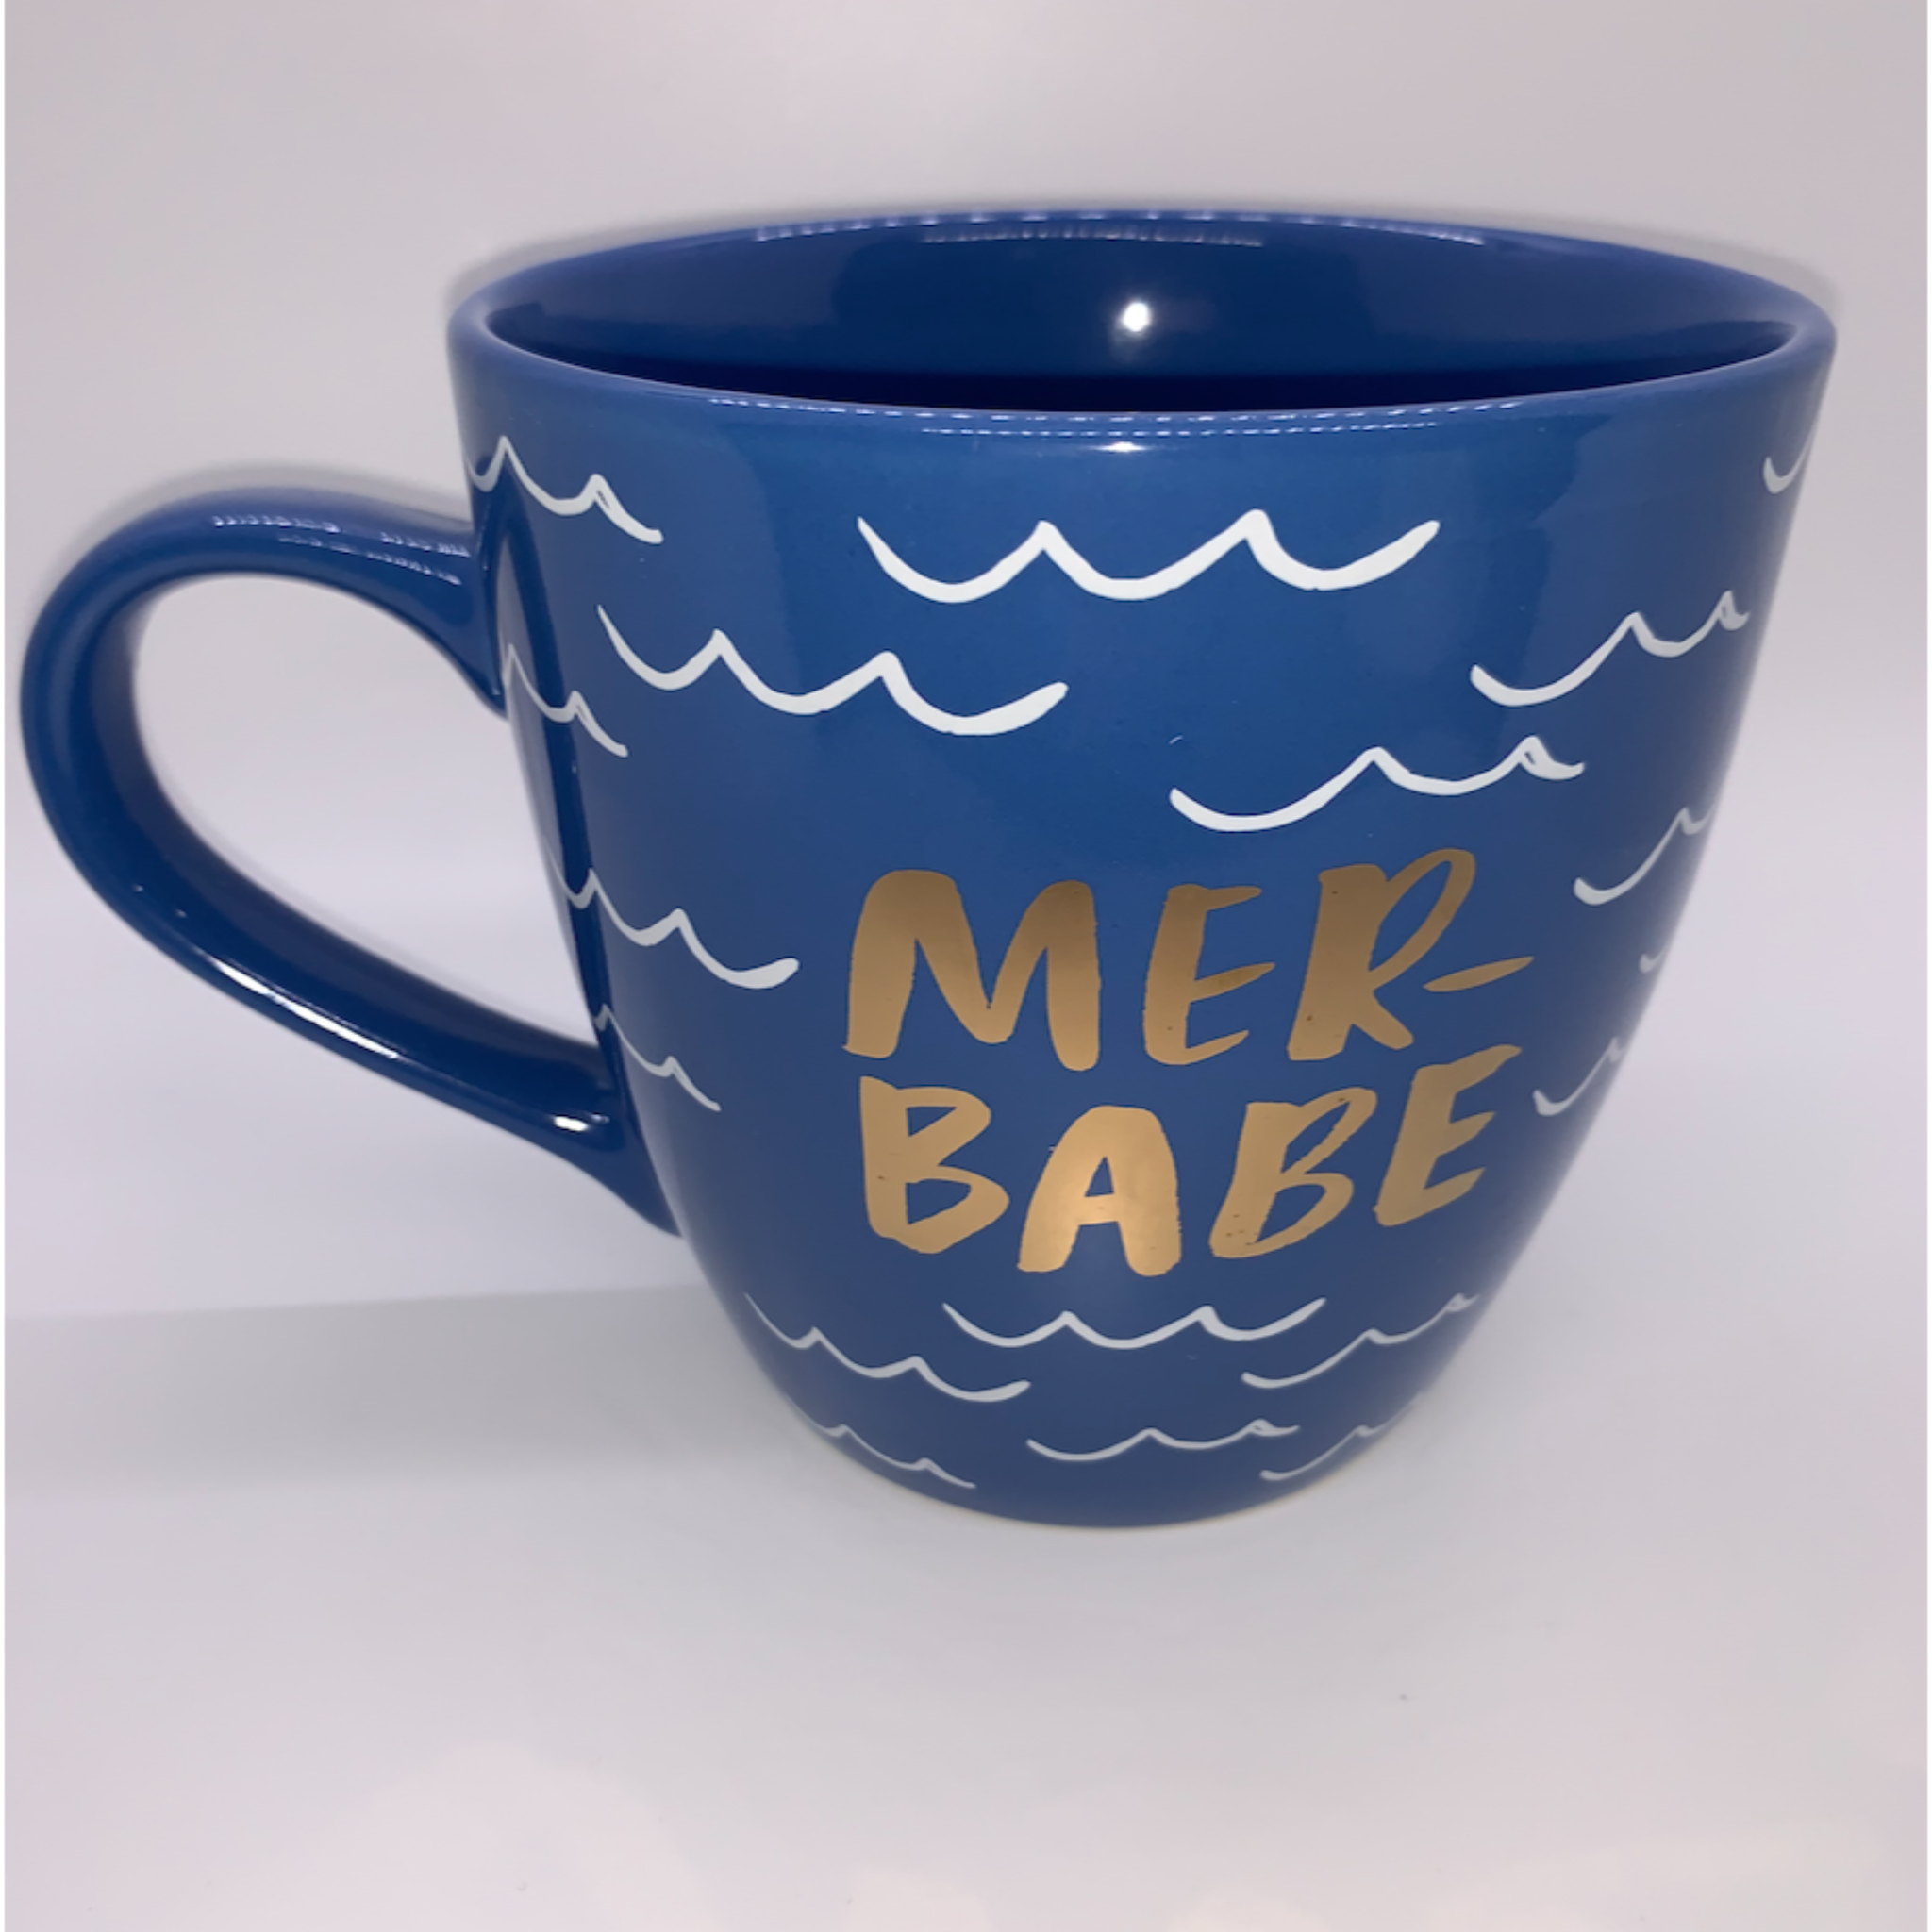 Mermaid Mugs